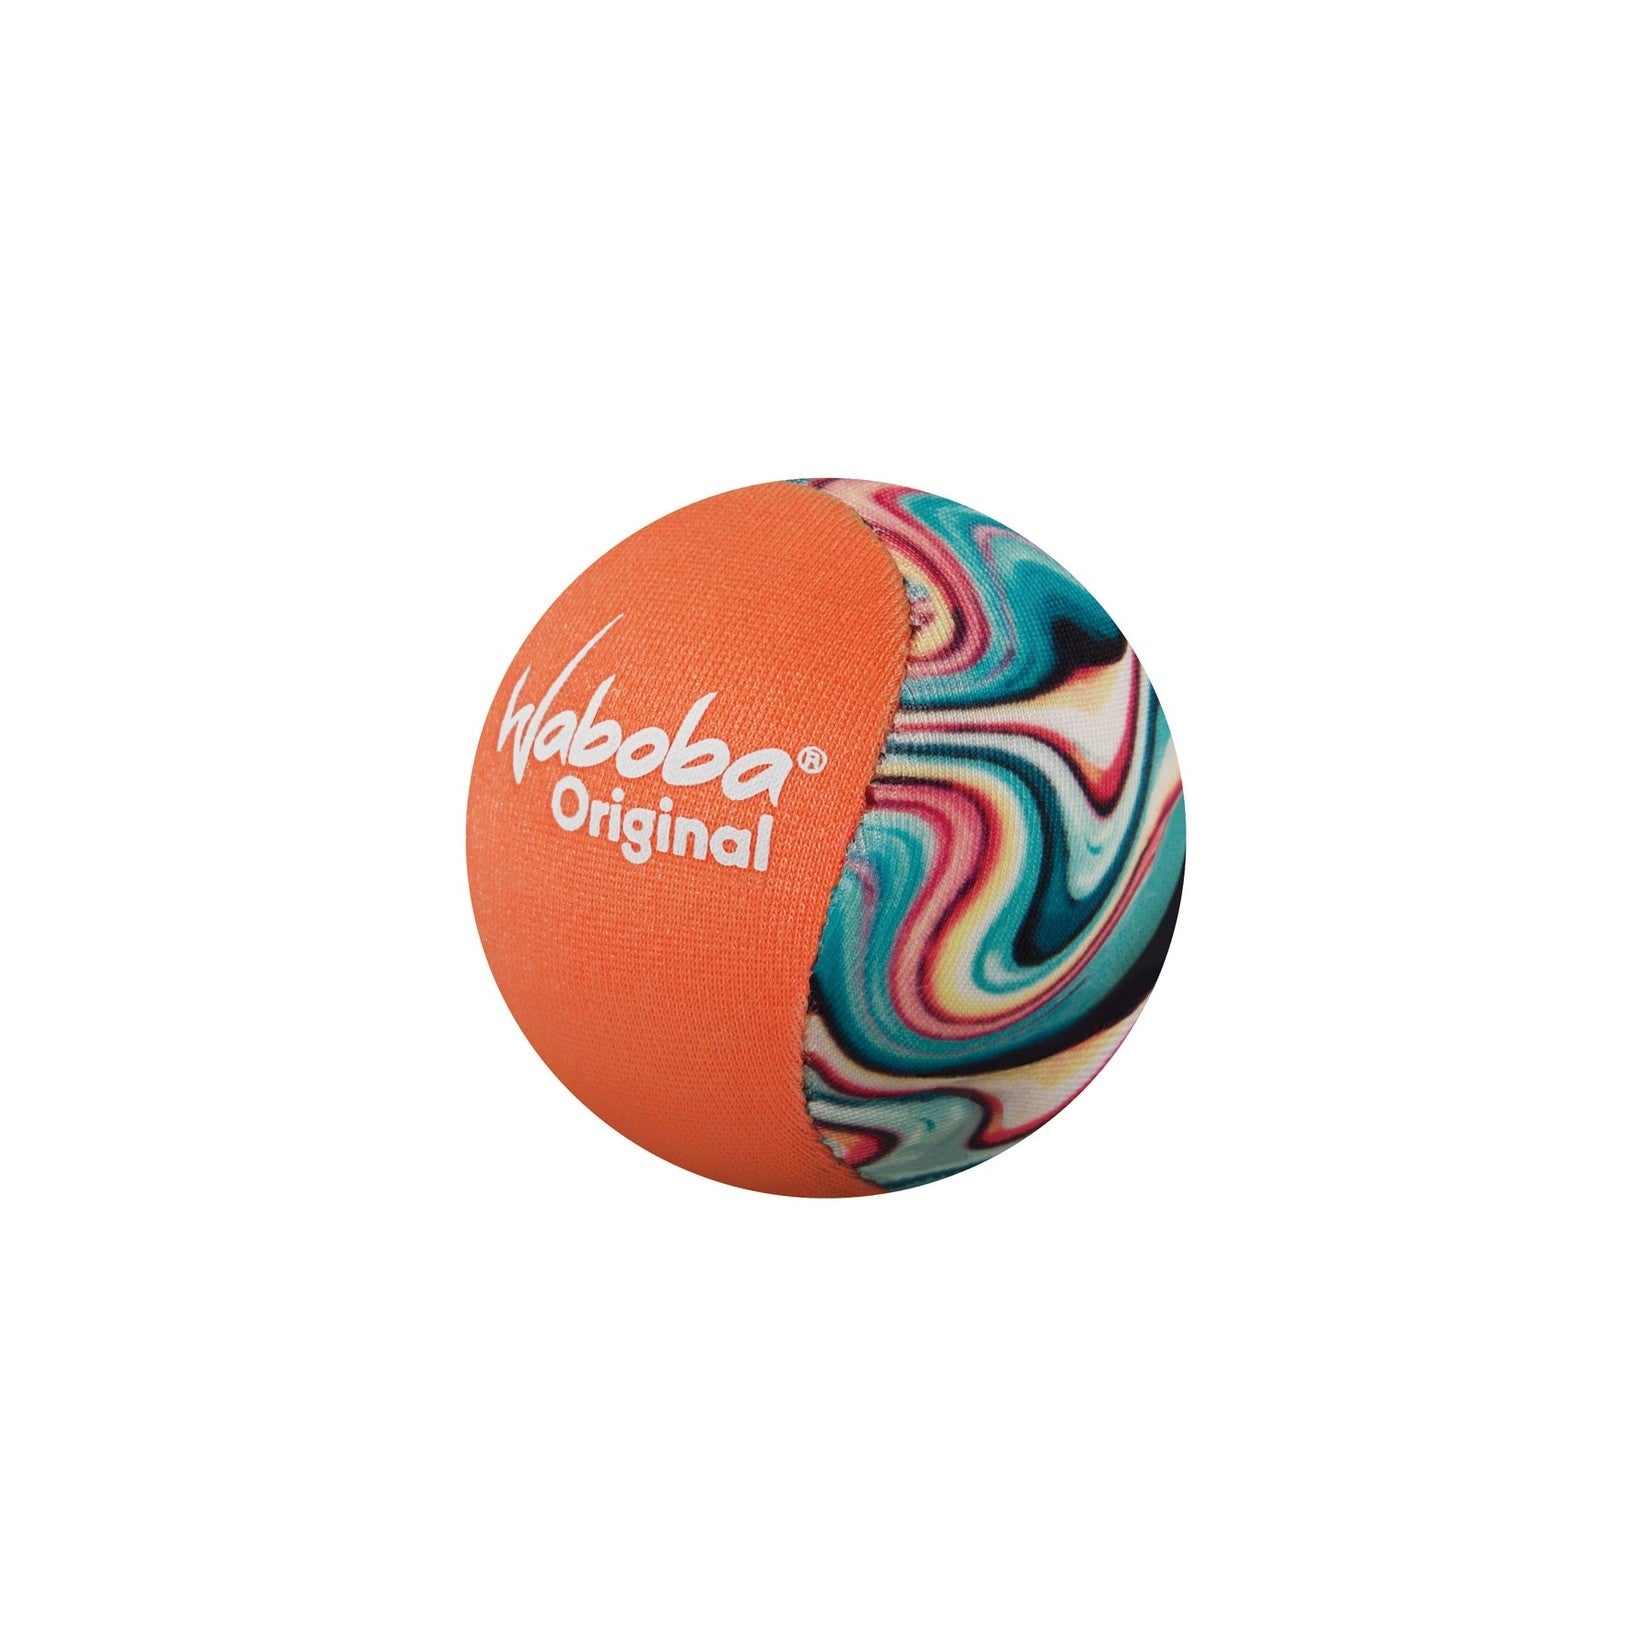 Waboba Original Ball - Assorted